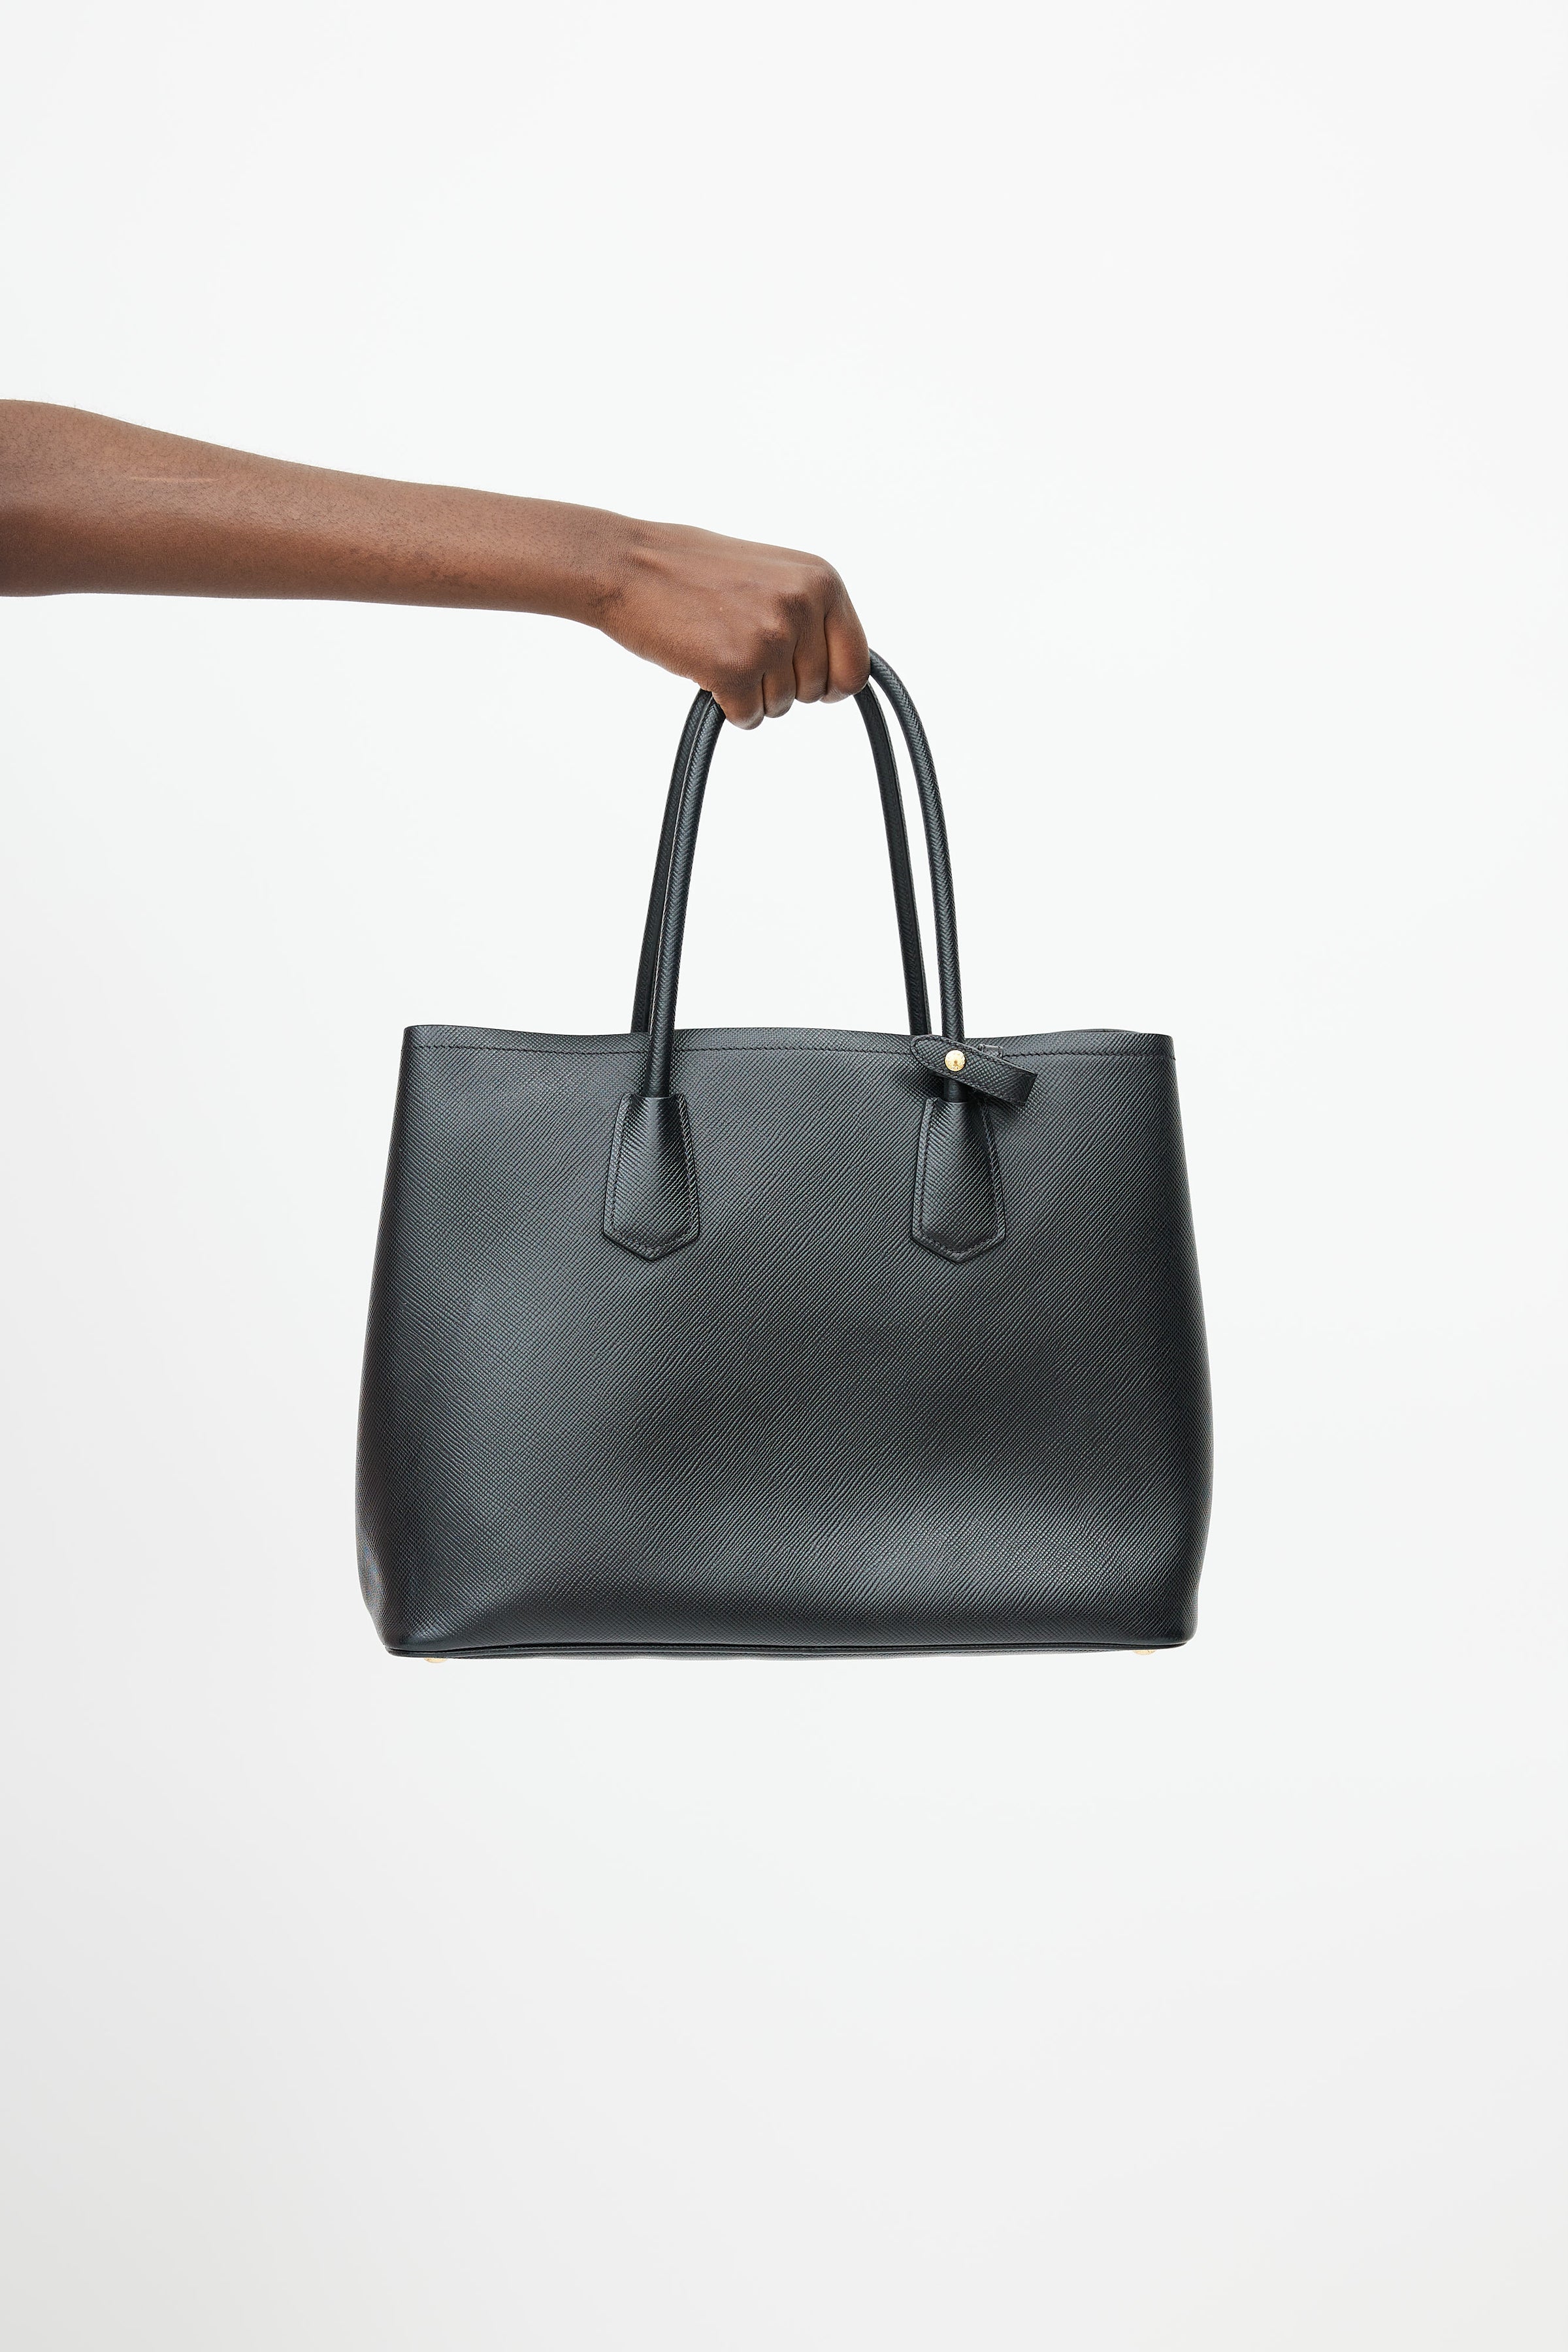 Prada Double Saffiano Leather Tote Bag in Black